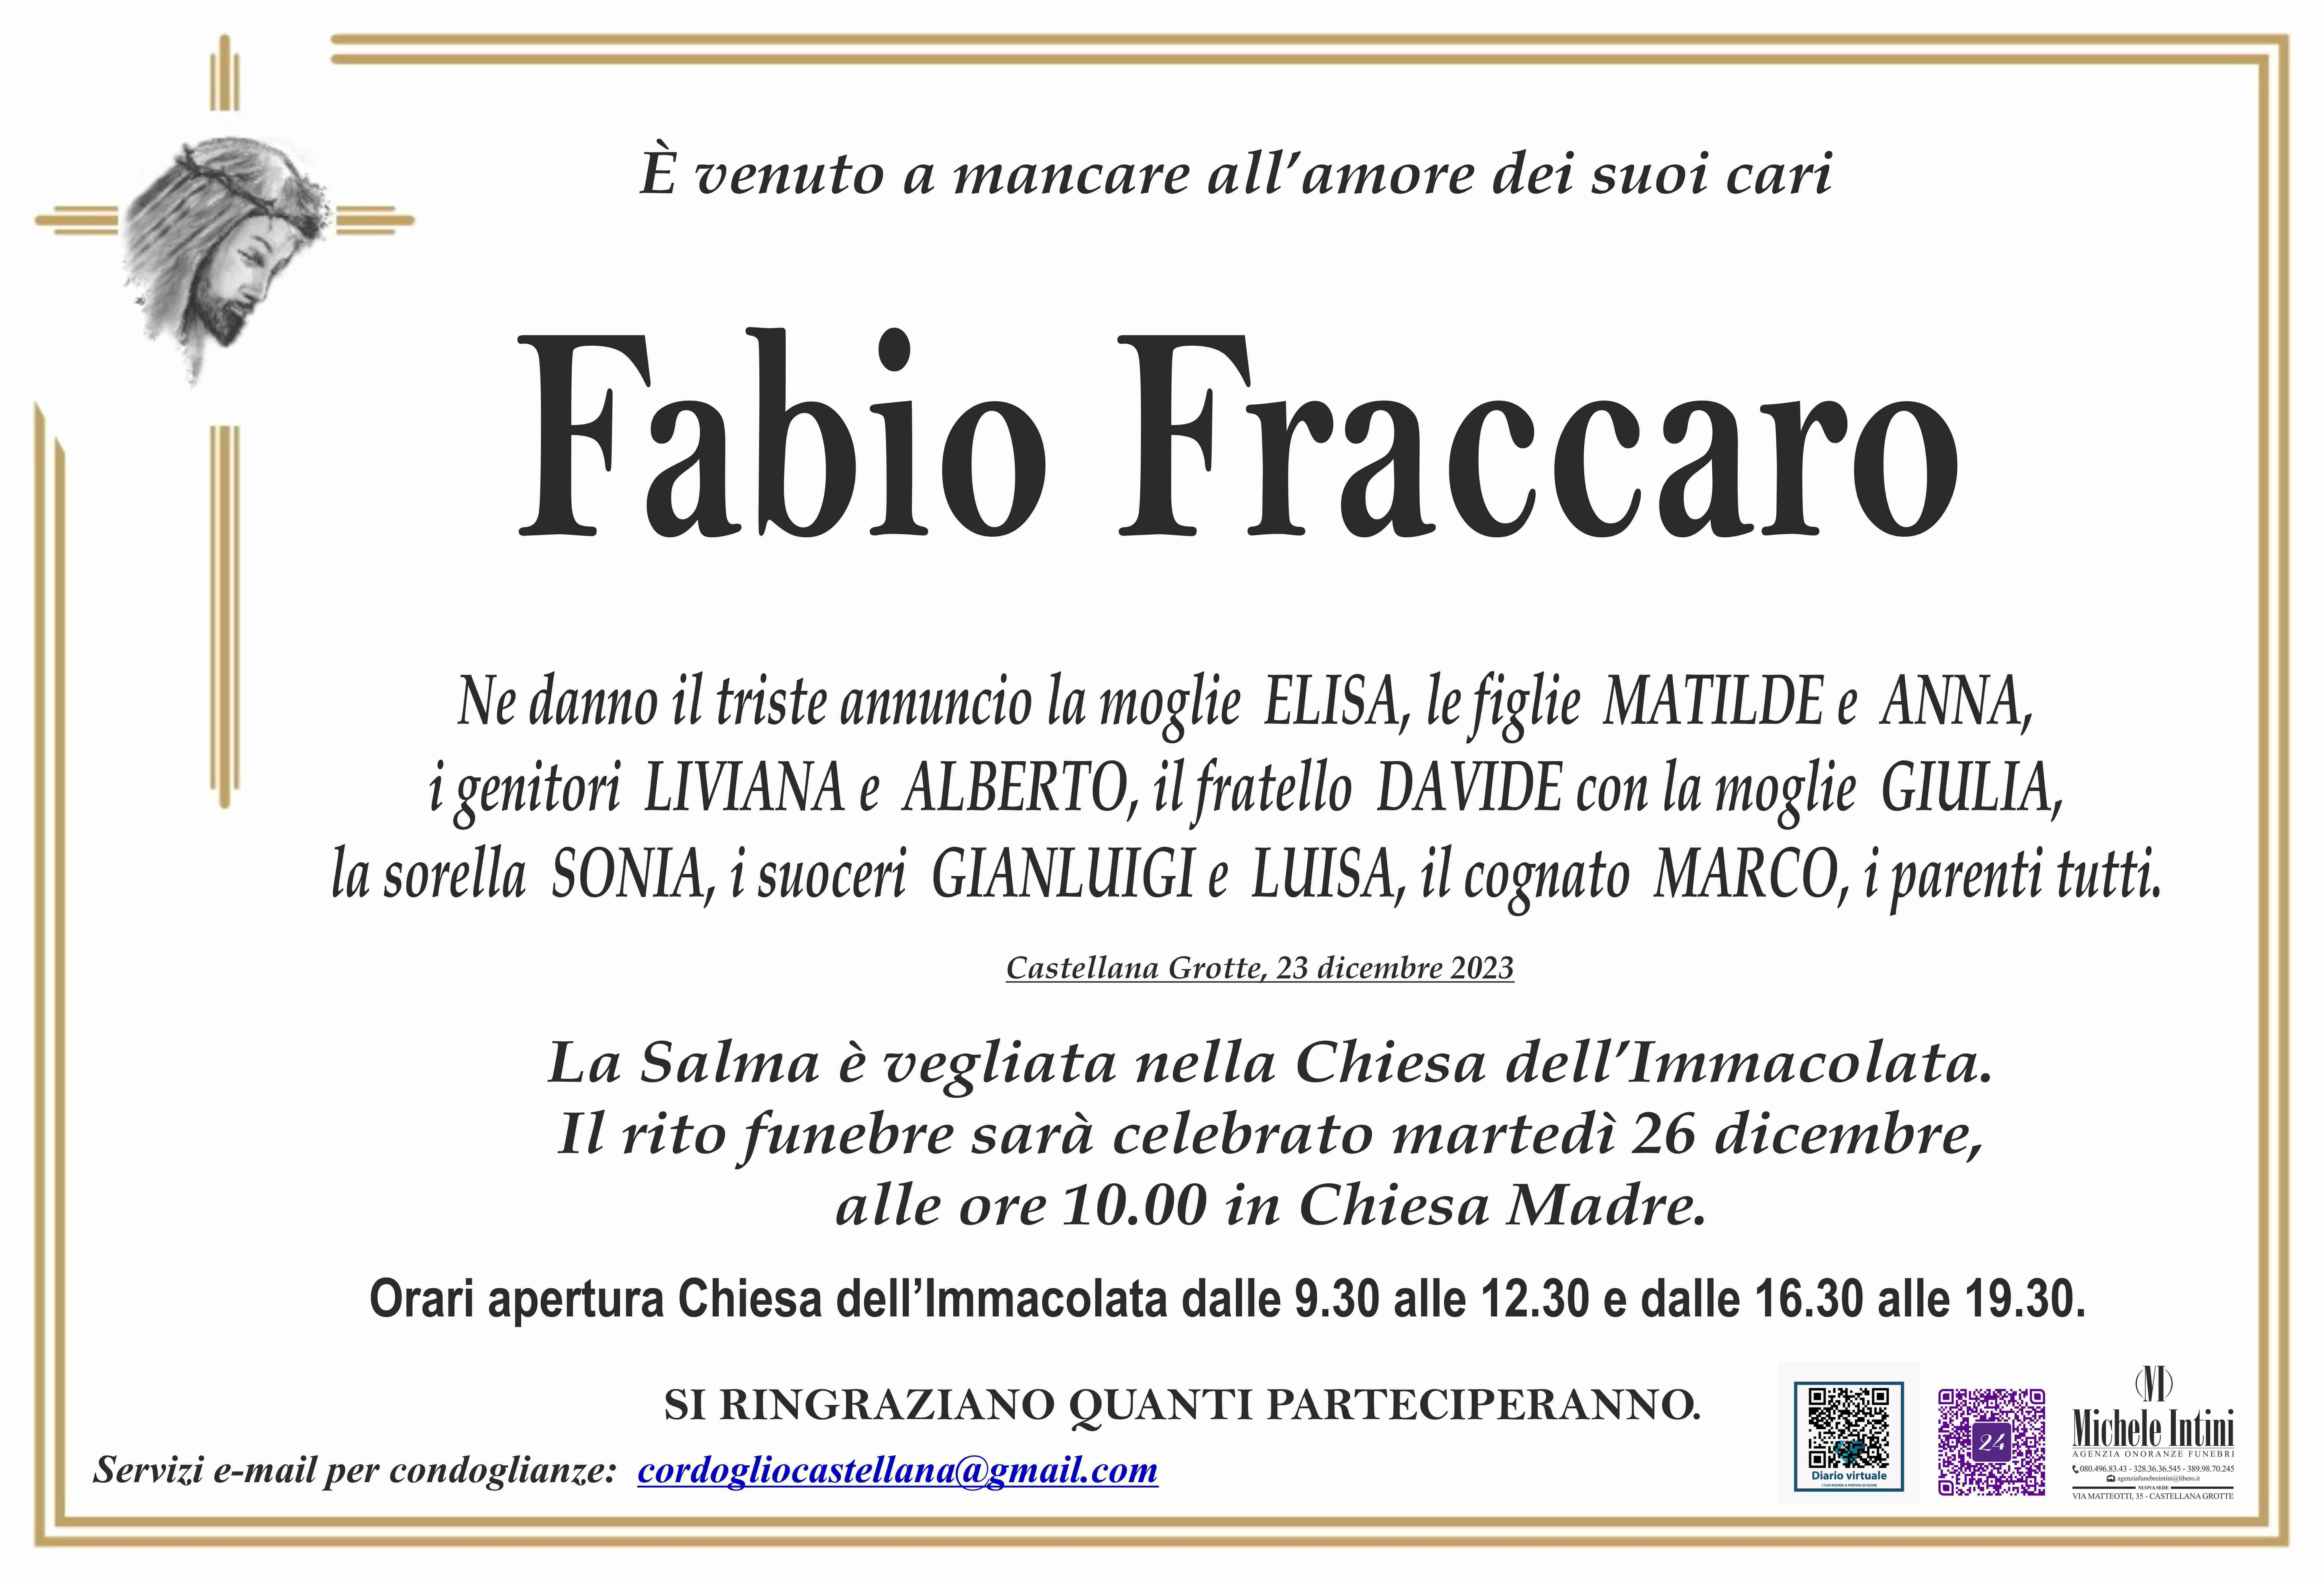 Fabio Fraccaro